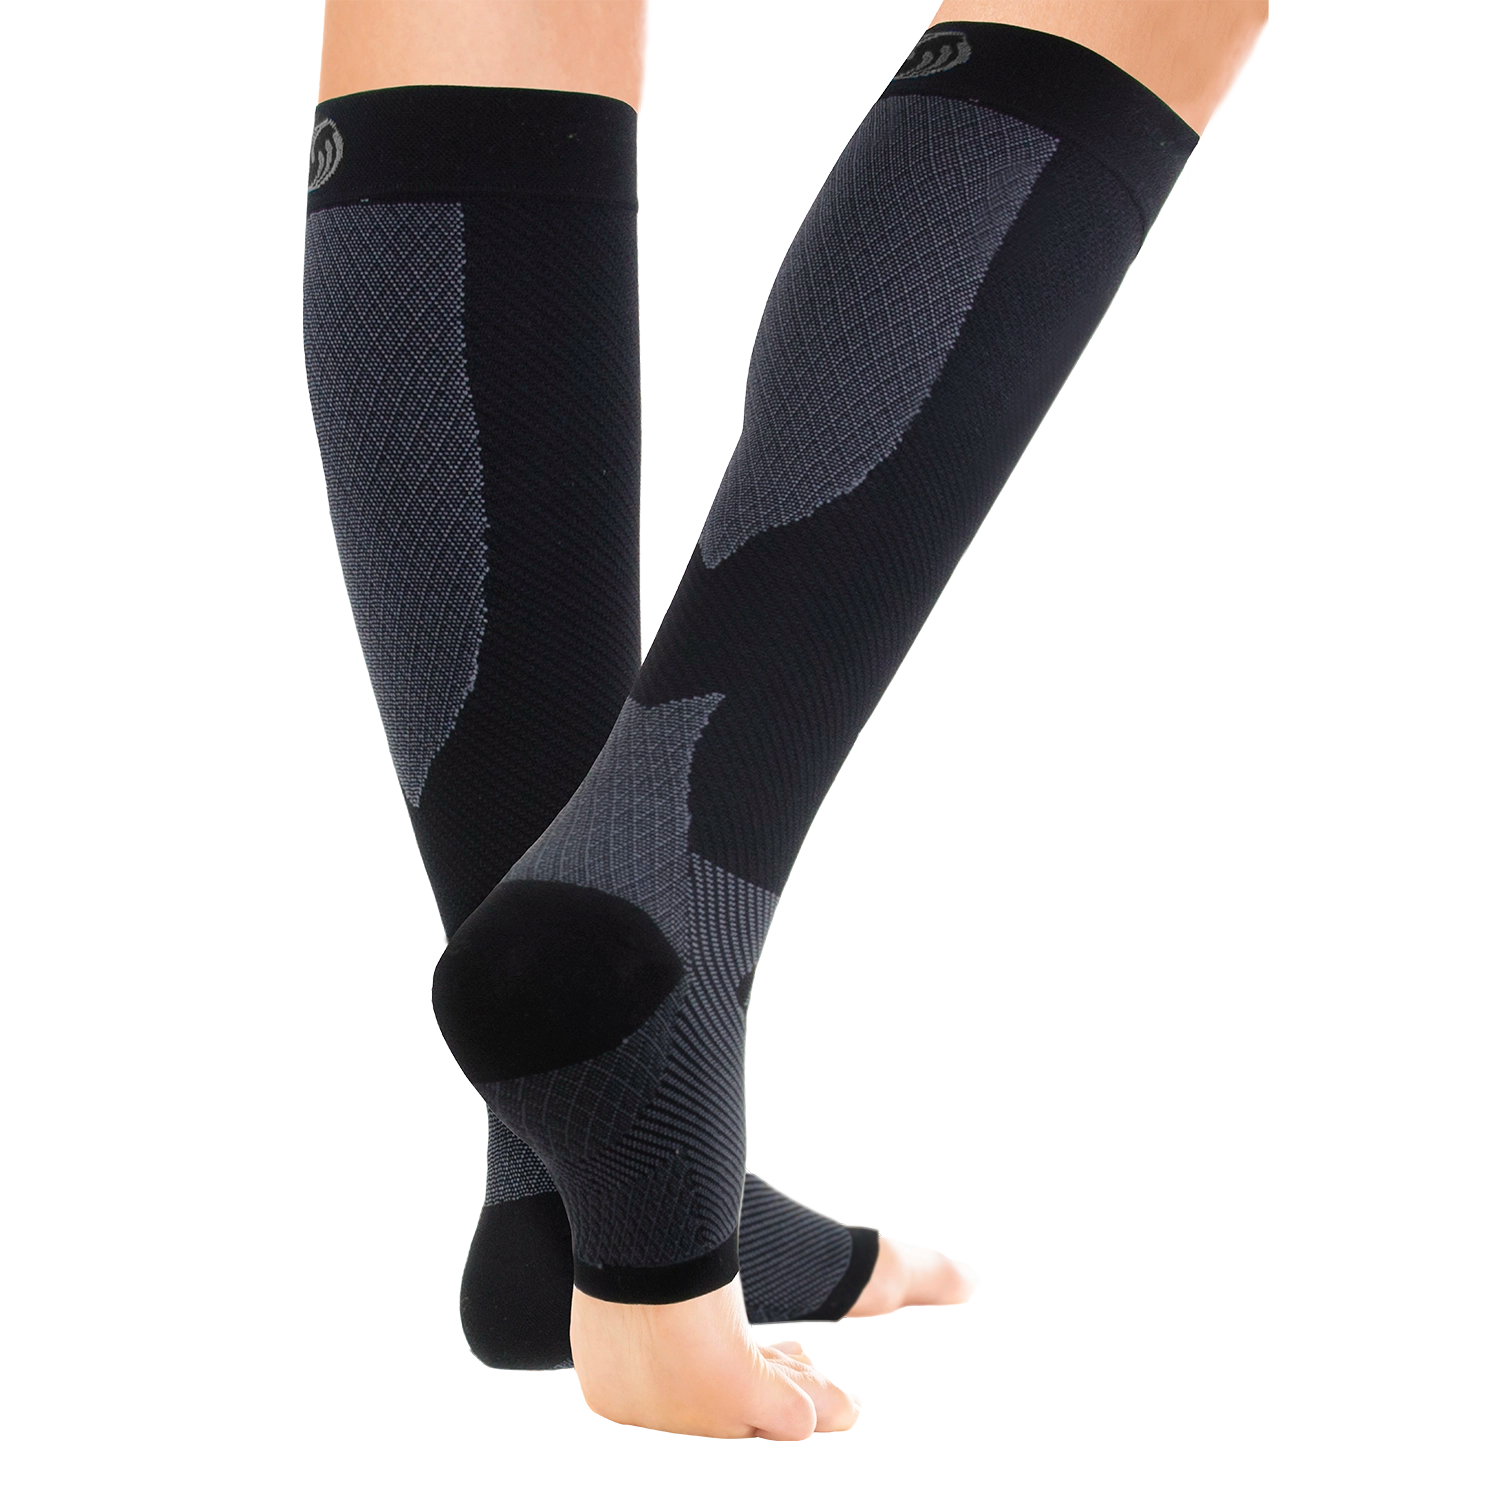 Compression Leg Sleeves – Orthosleeve